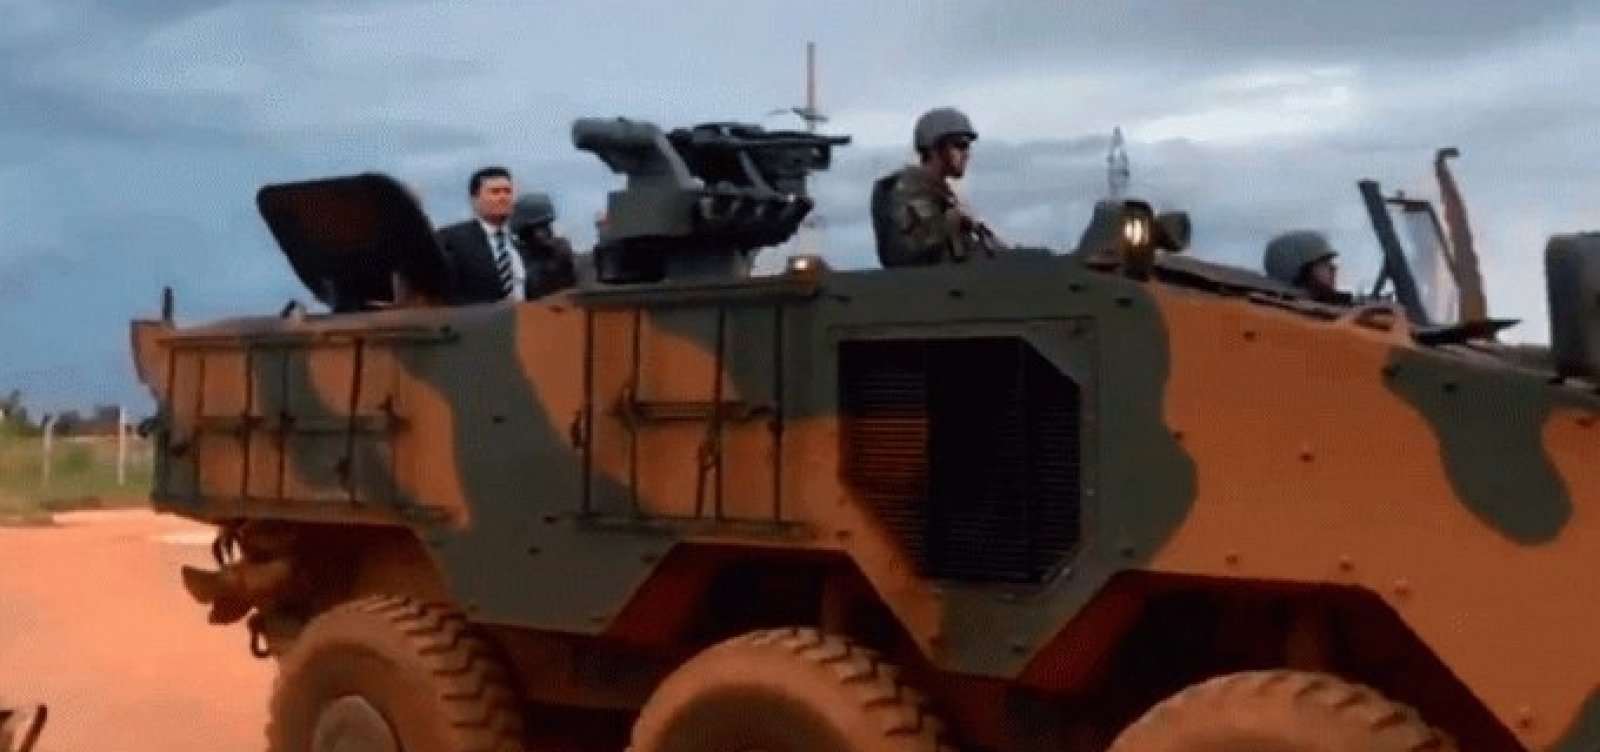 No tanque de guerra, Moro vai à Papuda e acompanha operação de GLO